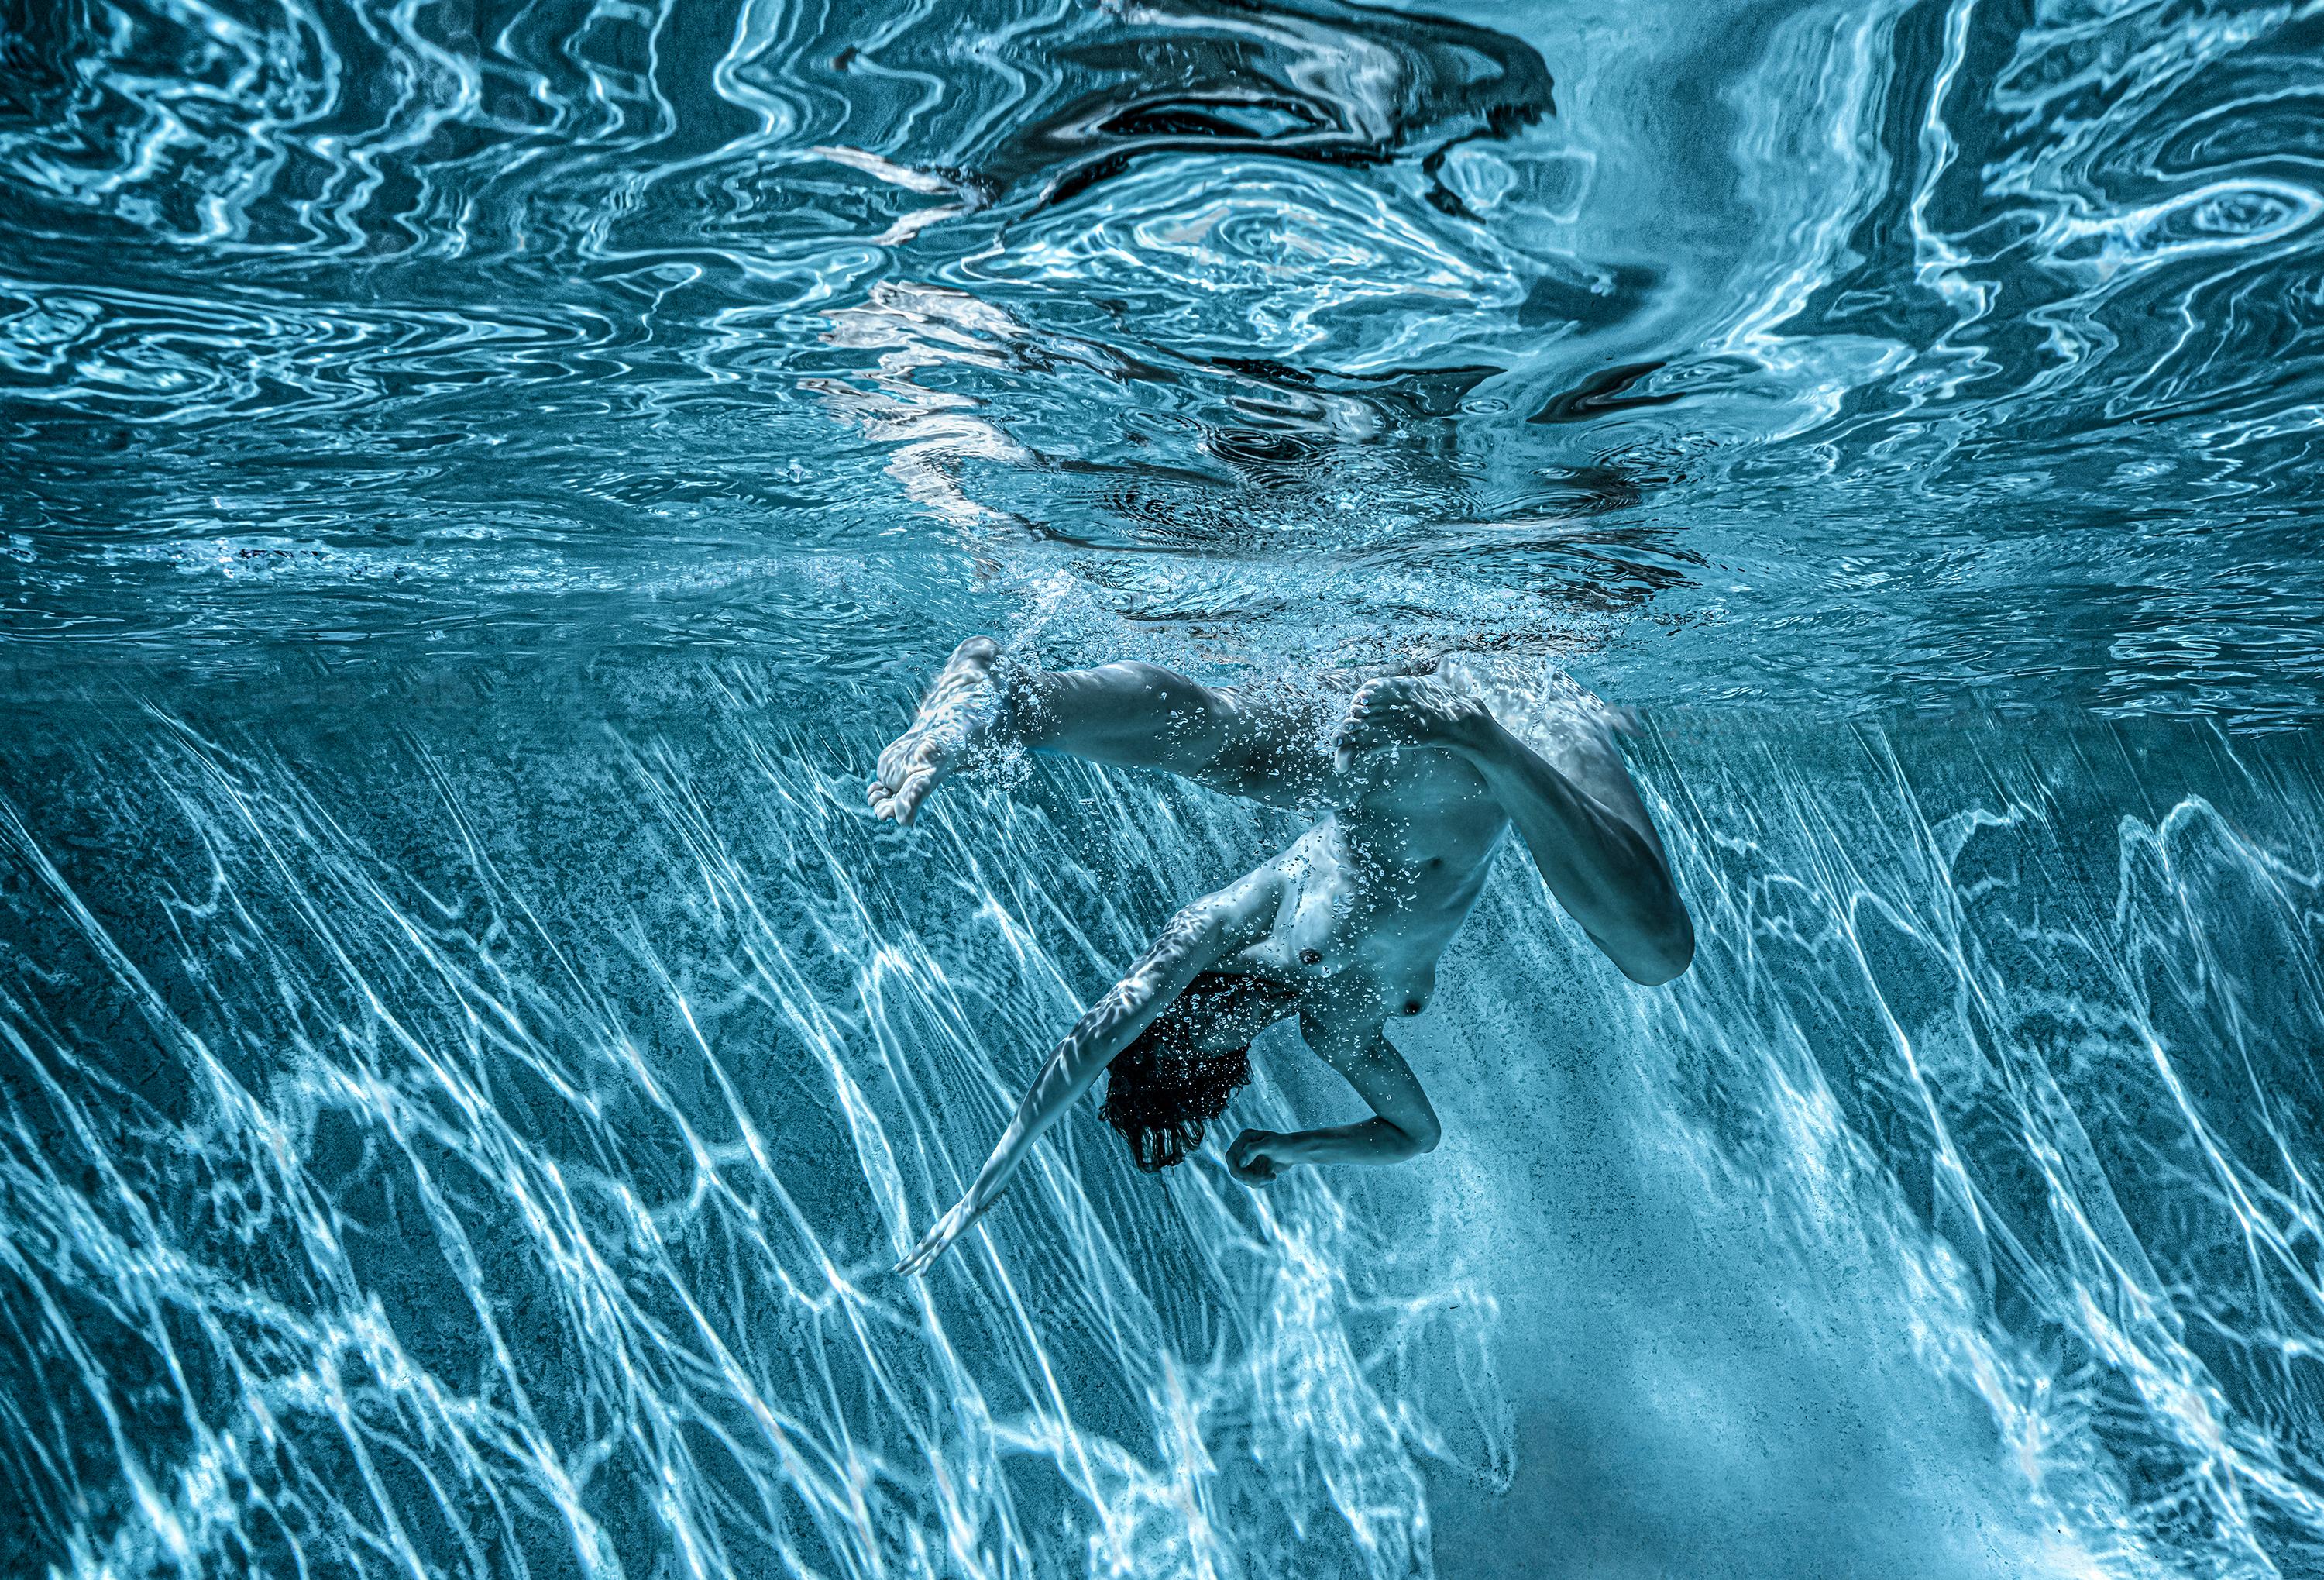 Moonlight III - underwater nude photo - archival pigment print 24x35"